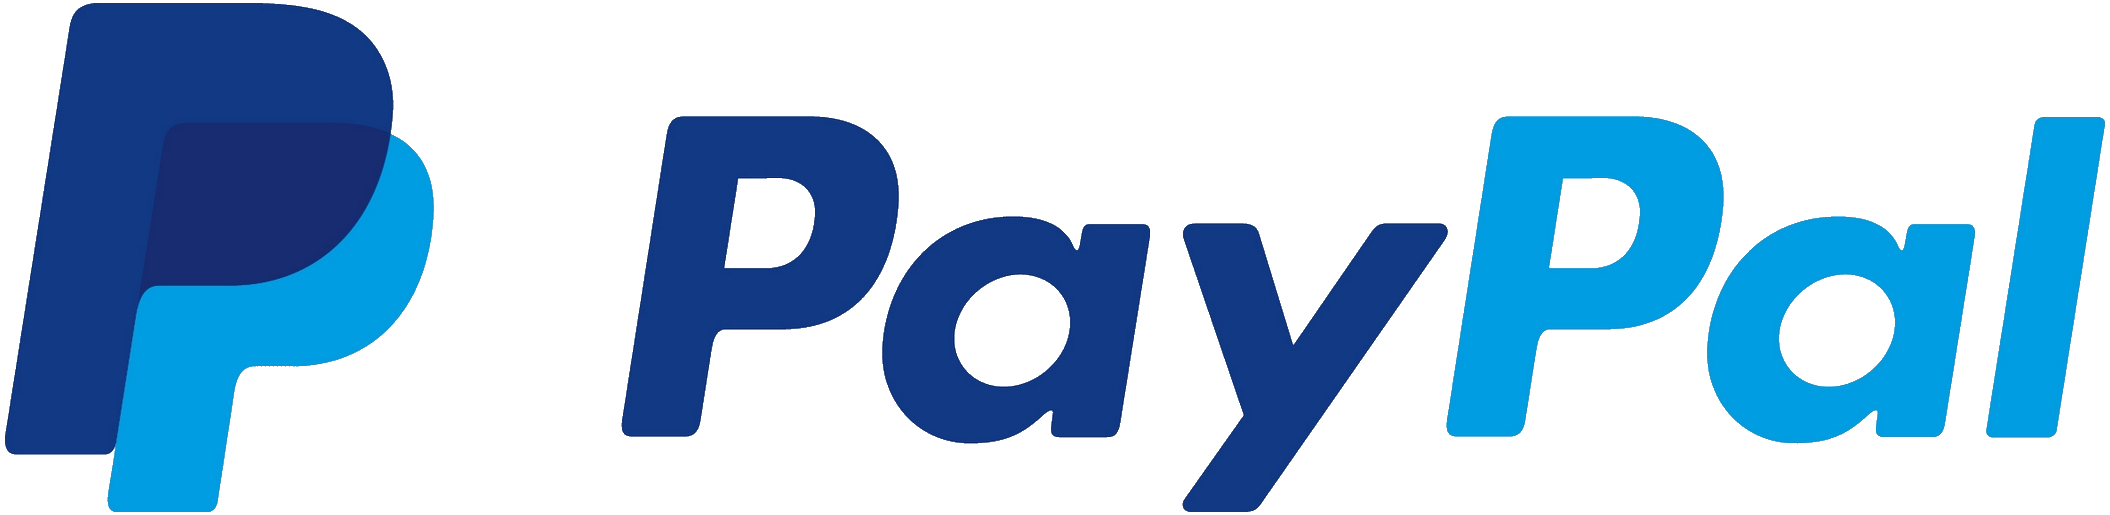 paypal logo freigestellt